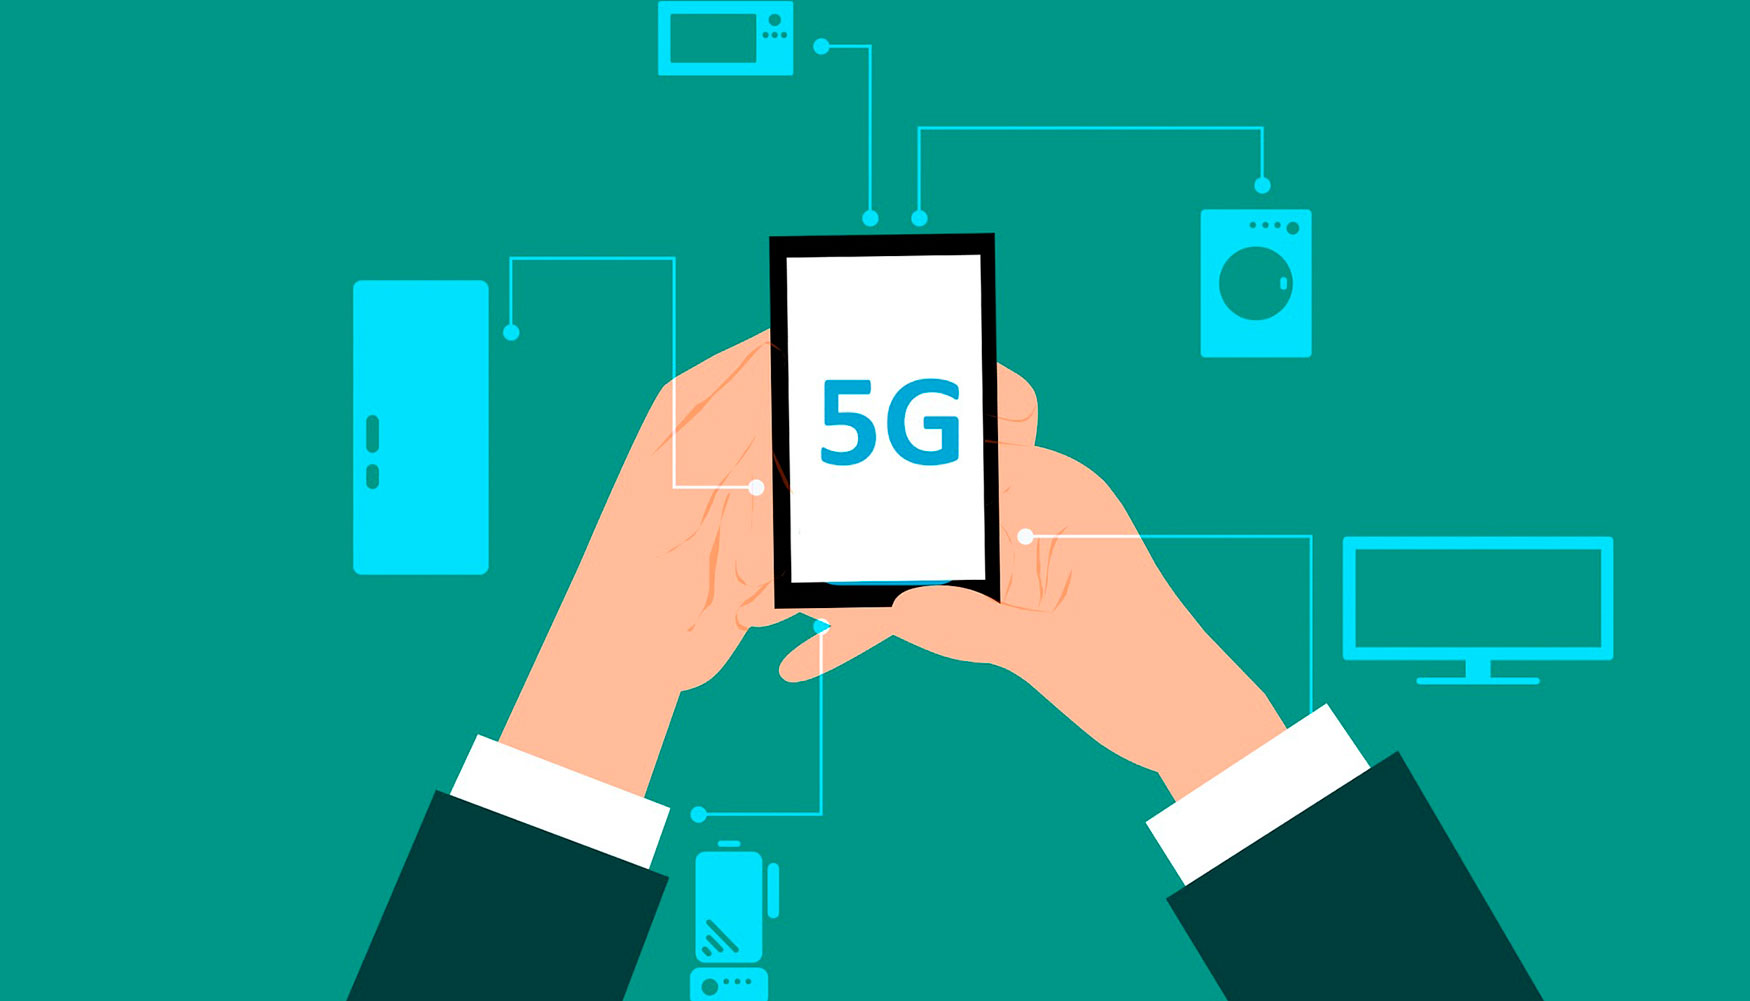 5G facilita una mayor transferencia de datos y una mayor conectividad entre dispositivos